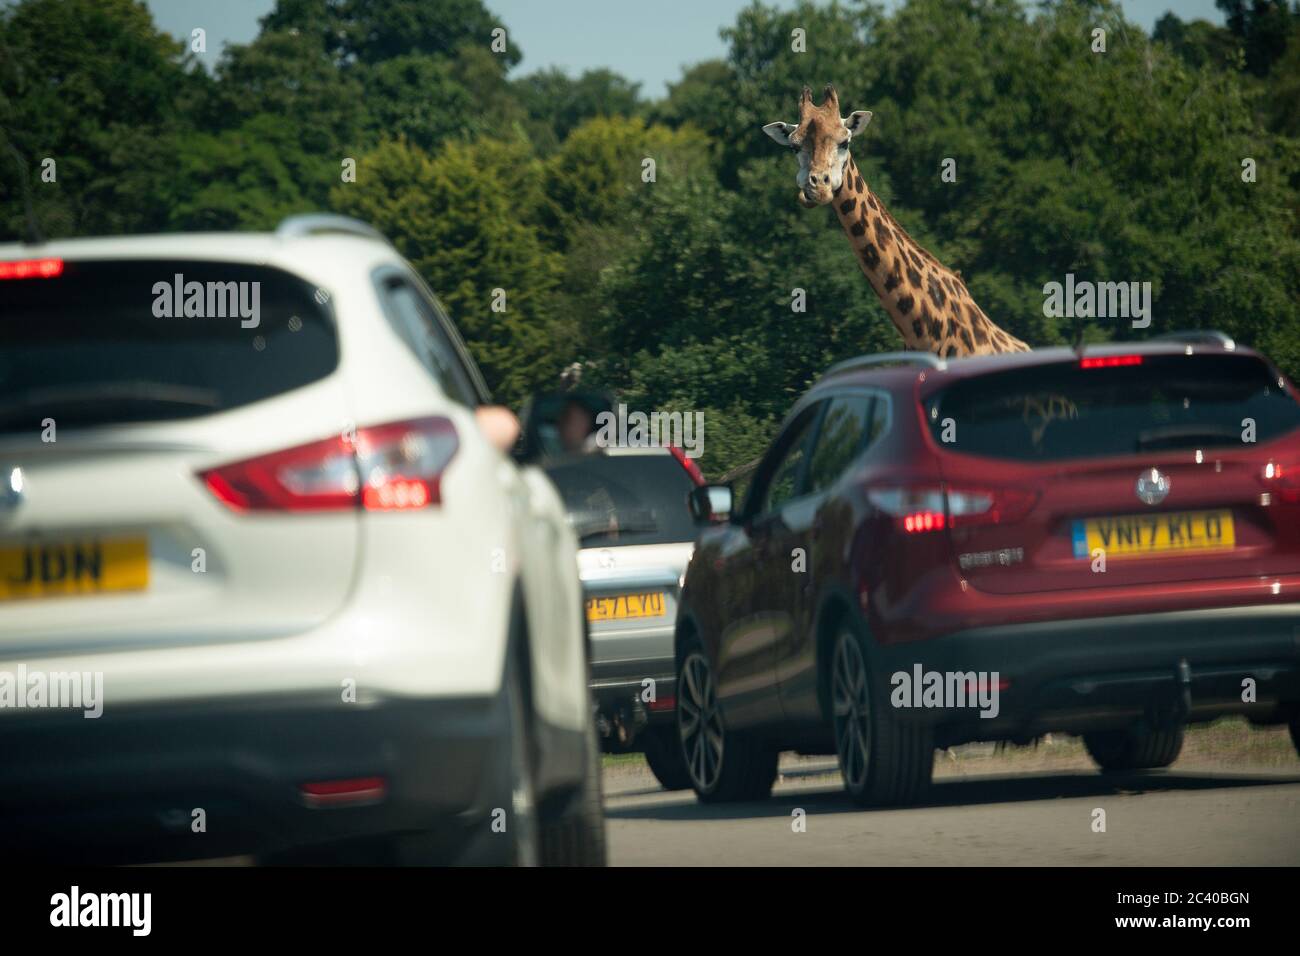 Besucher beobachten eine Giraffe im West Midlands Safari Park in Bewdley, da Großbritannien für eine Juni-Hitzewelle gerüstet ist, da die Temperaturen in dieser Woche bis in die Mitte der 30er Jahre steigen werden. Stockfoto